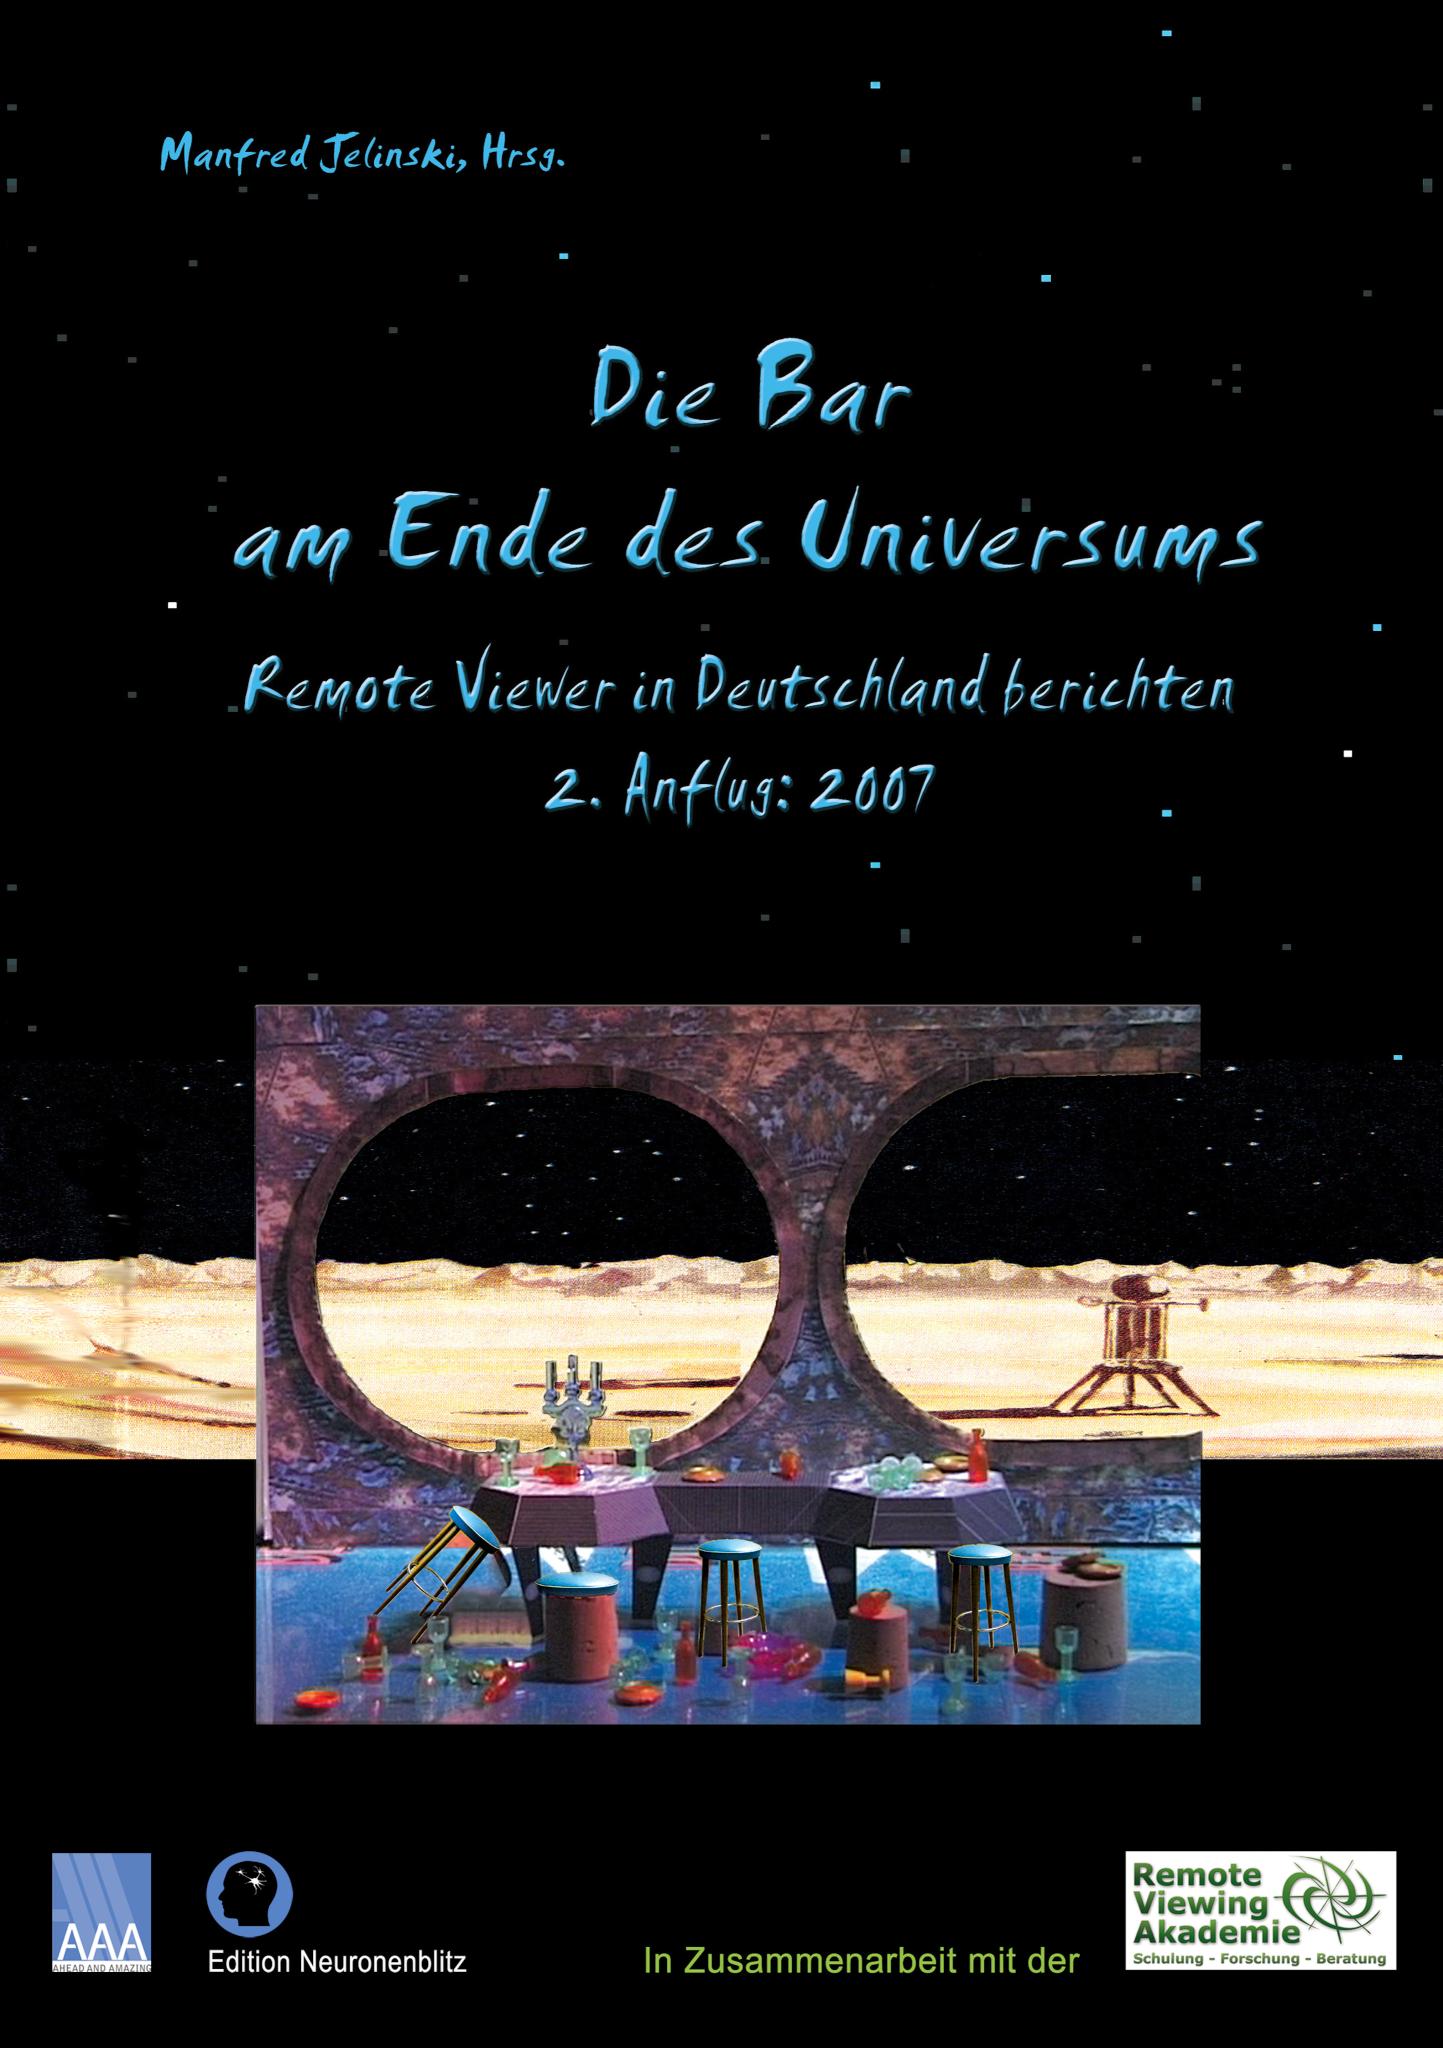 Die Bar am Ende des Universums 2 Remote Viewer in Deutschland berichten, 2. Anflug: 2007